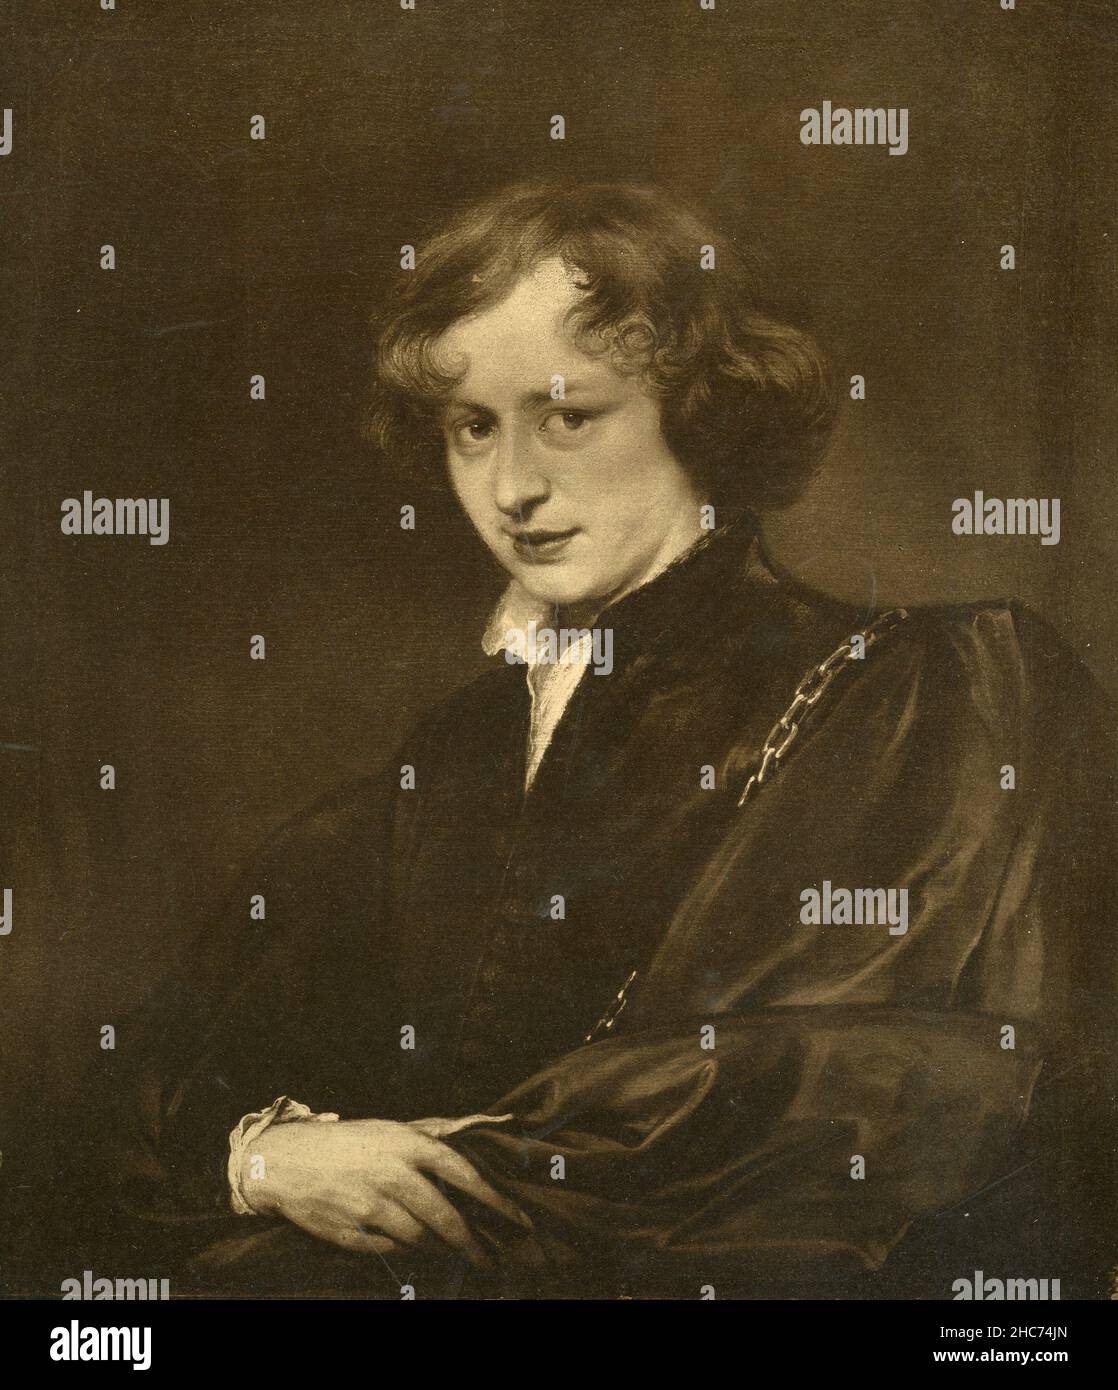 Autoritratto dell'artista, dipinto dall'artista fiammingo Anthony van Dyck, Monaco di Baviera 1897 Foto Stock